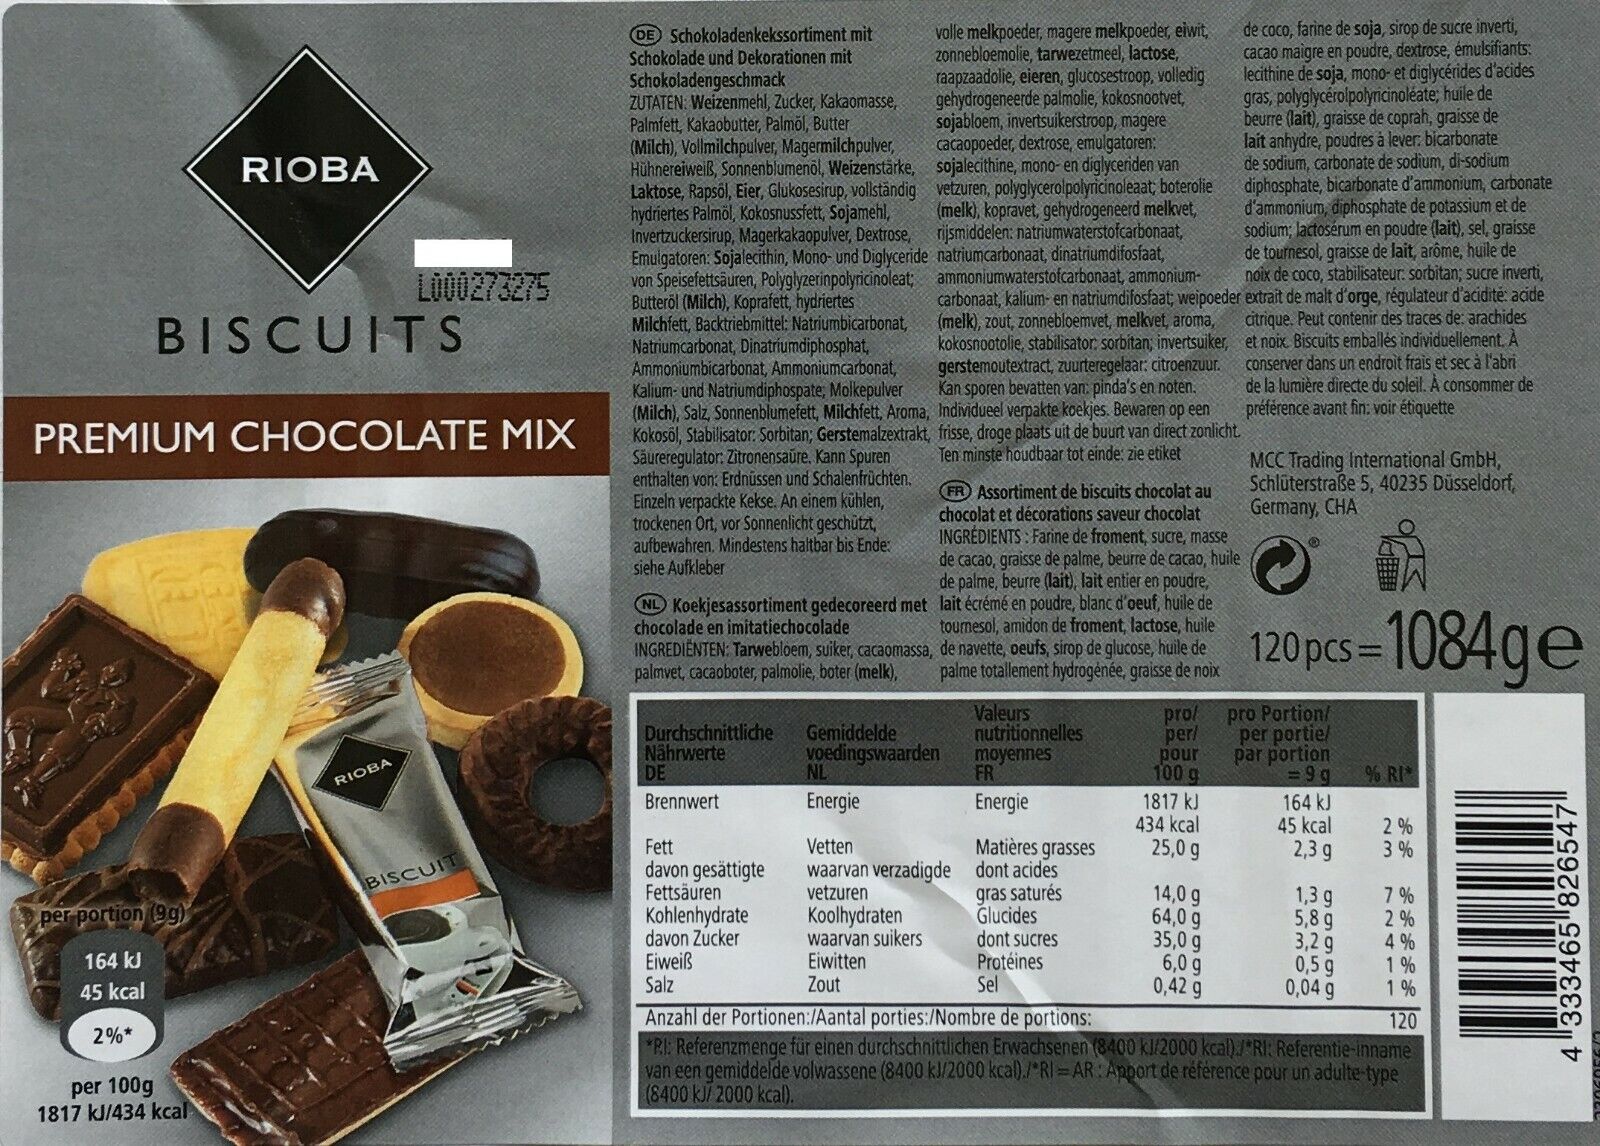 Rioba 120 Premium Kekse Choclate Mix mit Schokolade einzeln verpackt 1084g